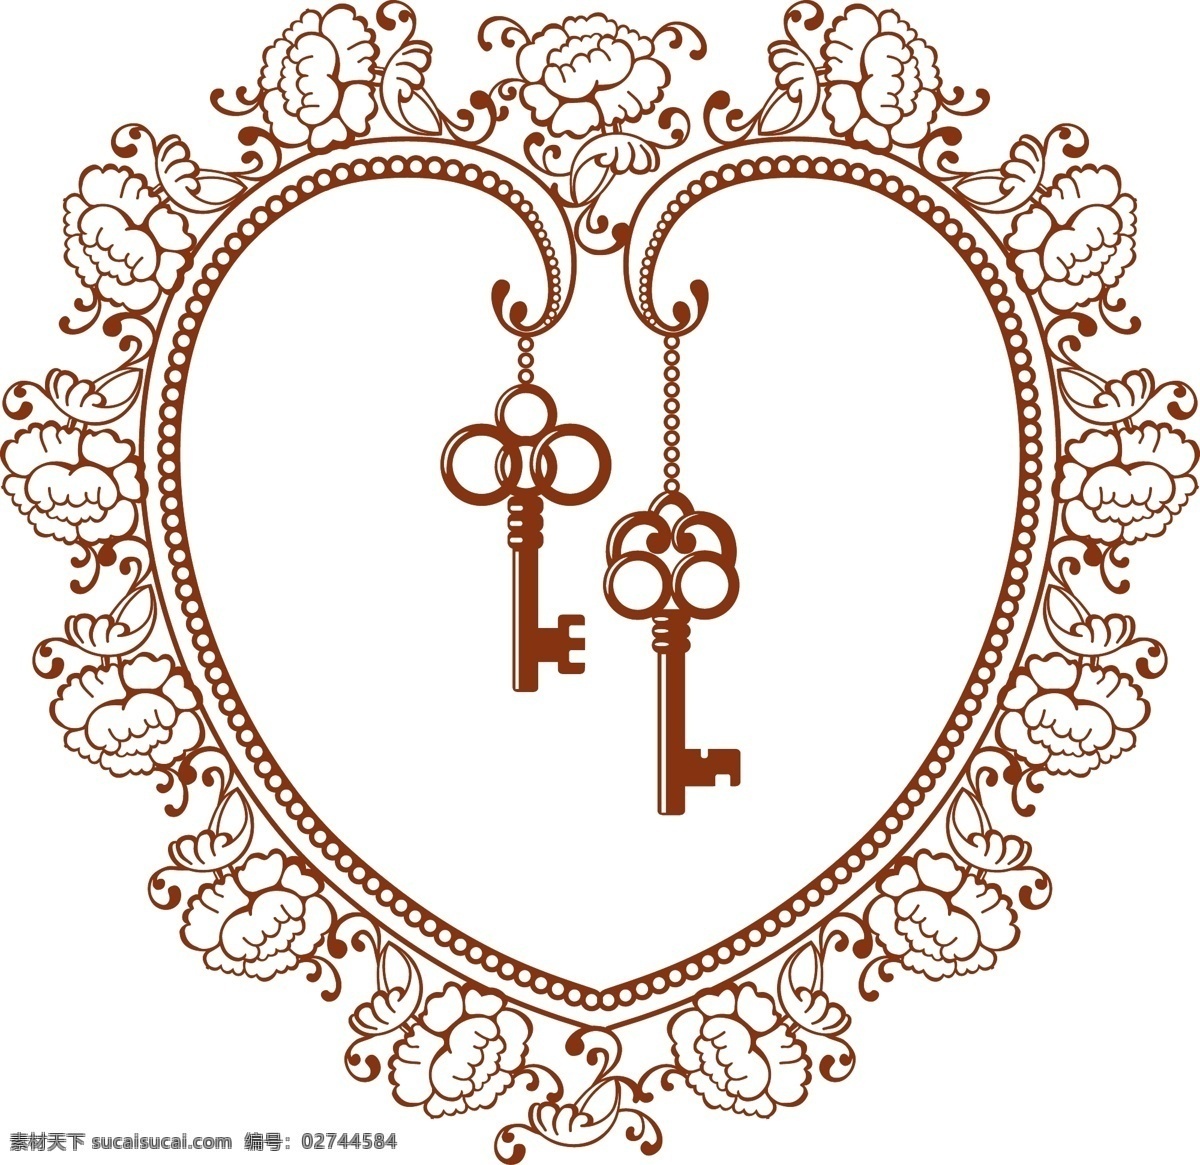 玫瑰心形元素 褐色 玫瑰 花纹 边框 心形 钥匙 吊坠